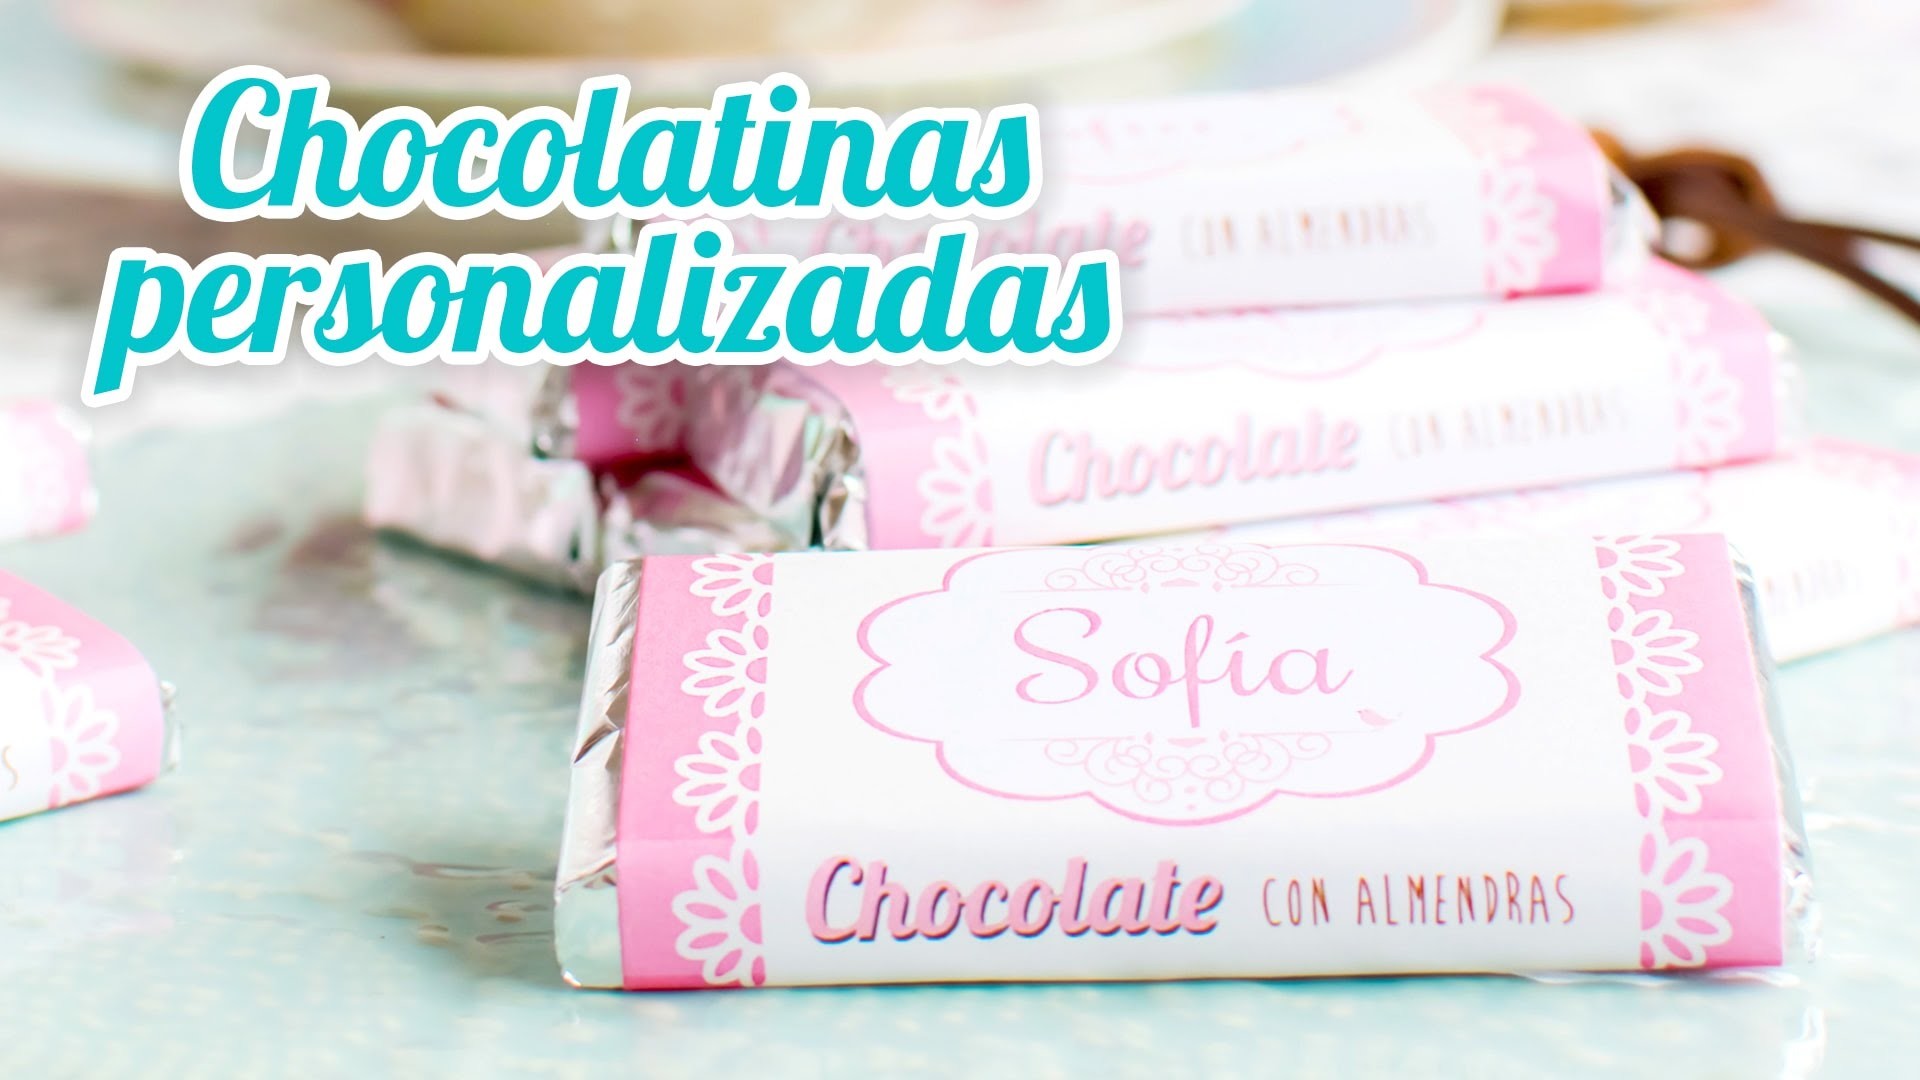 Chocolatinas personalizadas - Idea rápida | #14 Mesa dulce para Baby Shower | Quiero Cupcakes!